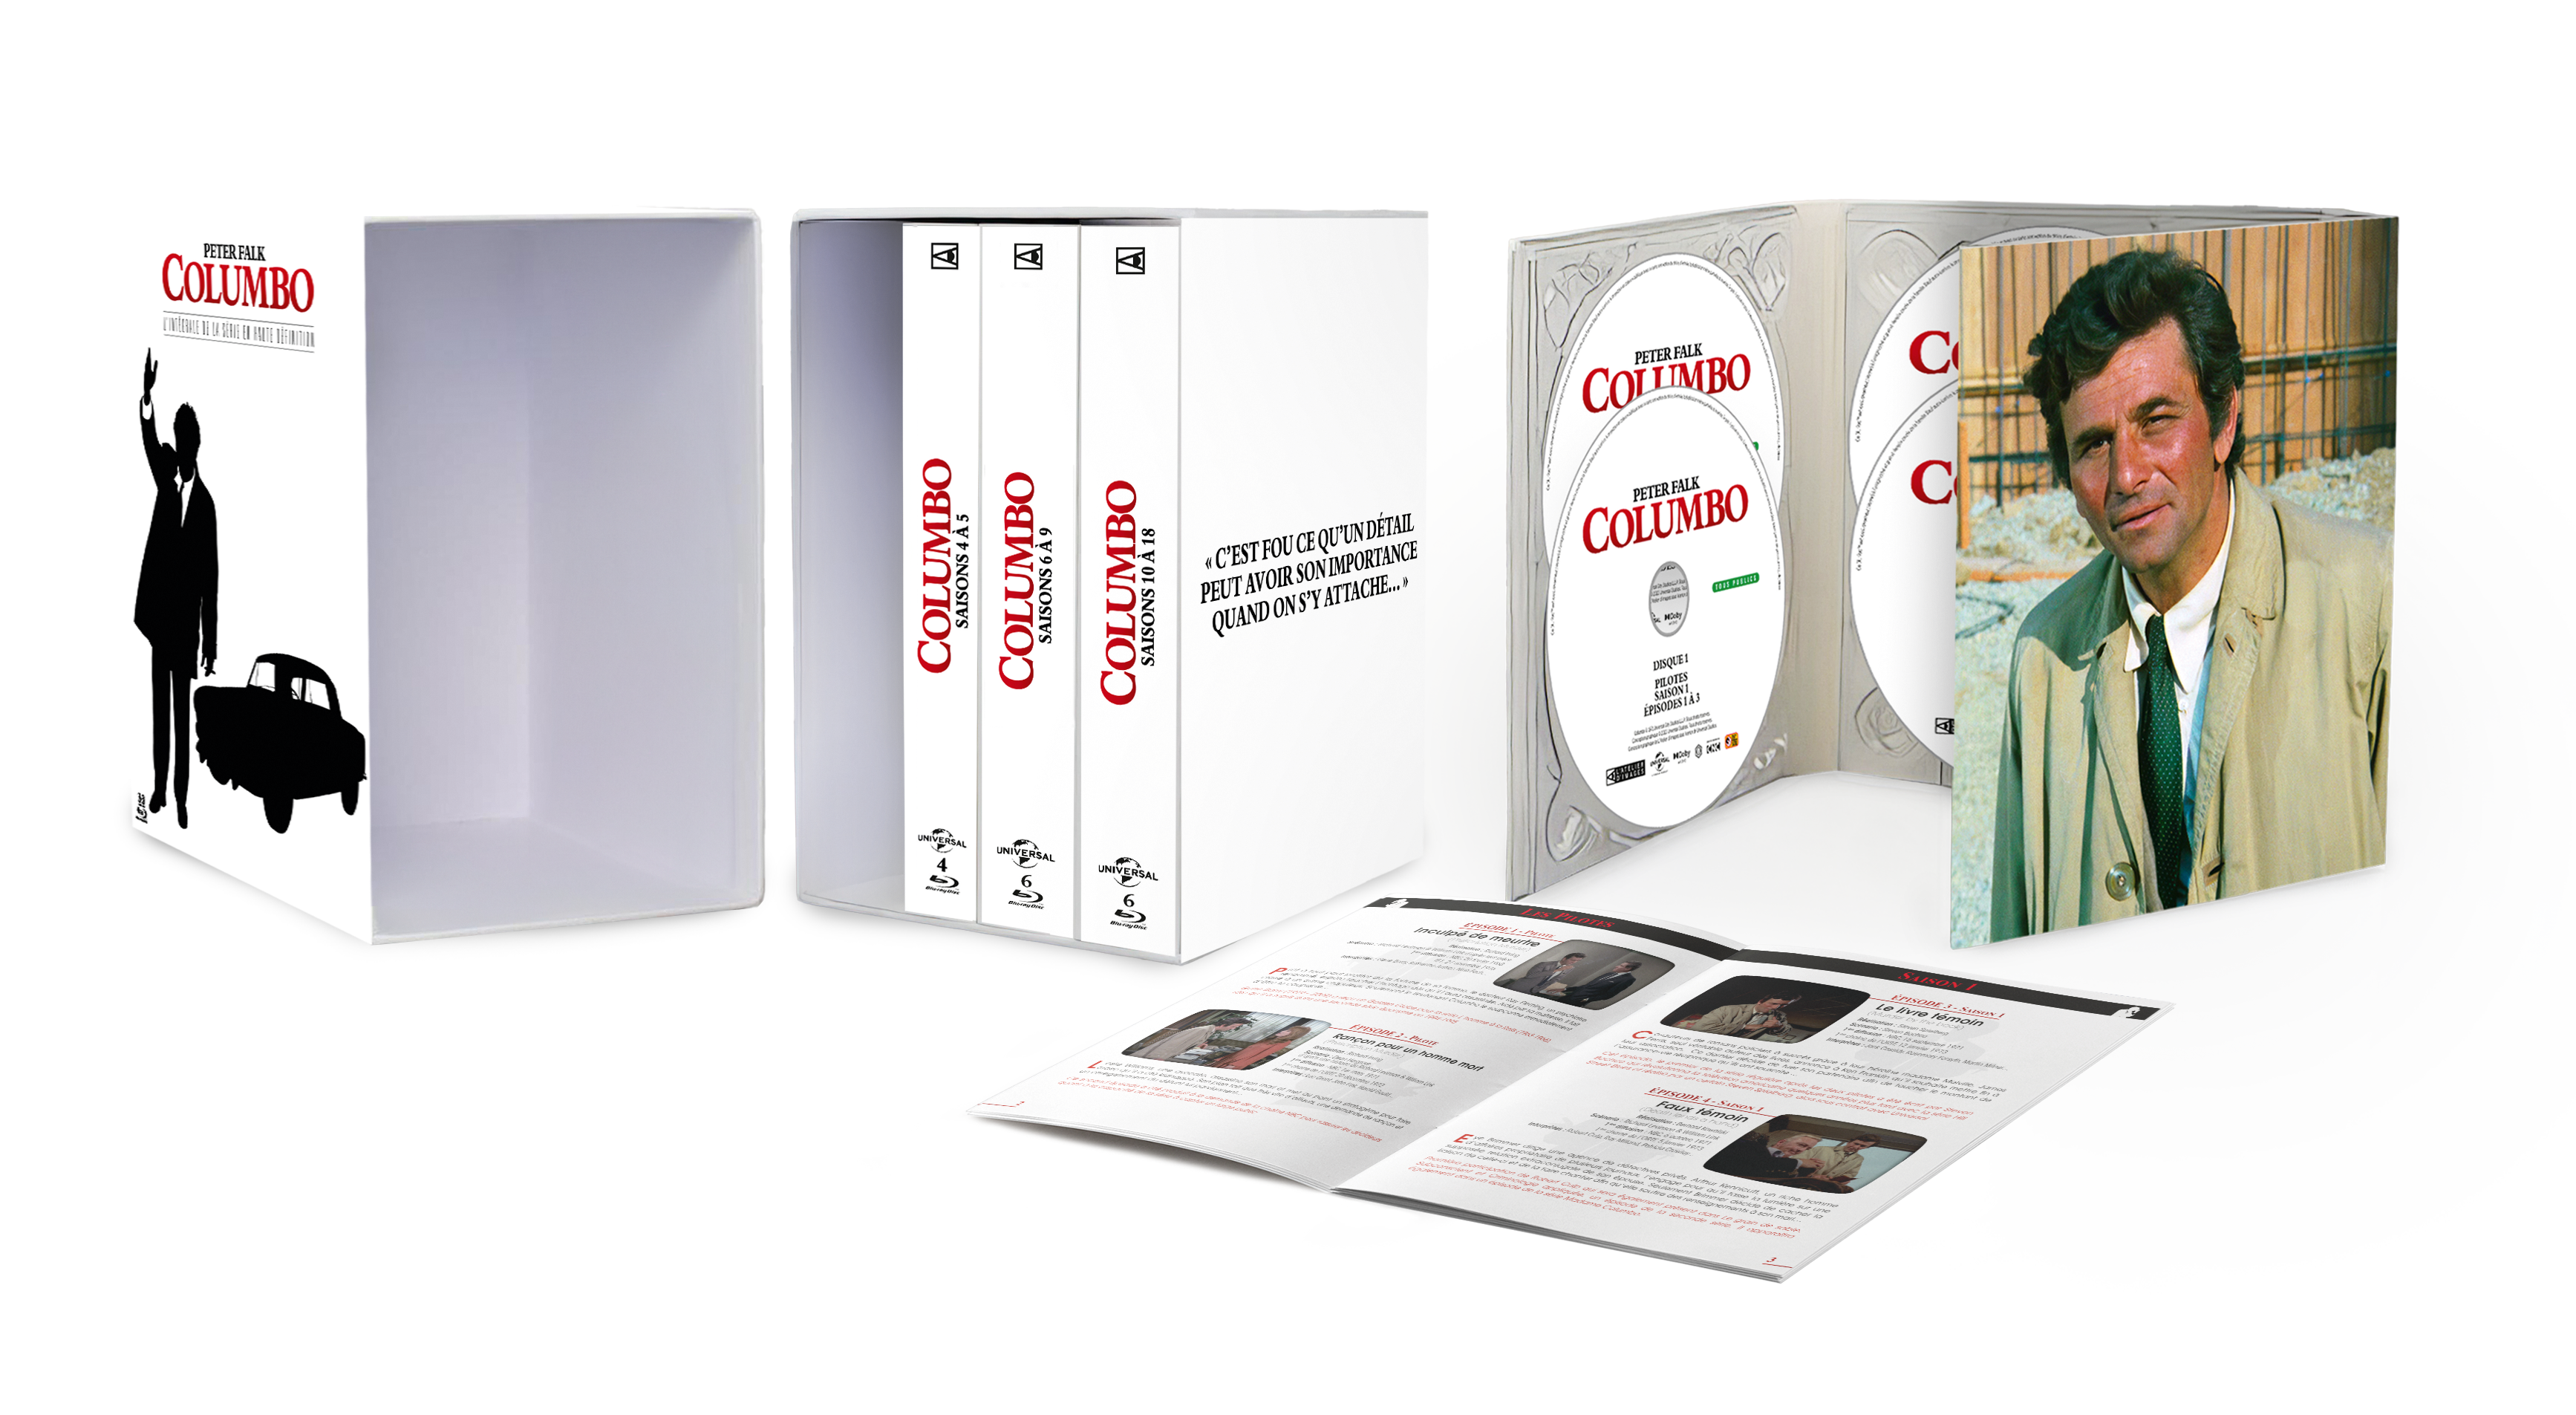 Columbo sort enfin en intégrale Blu-ray : les précos sont ouvertes chez l’éditeur !